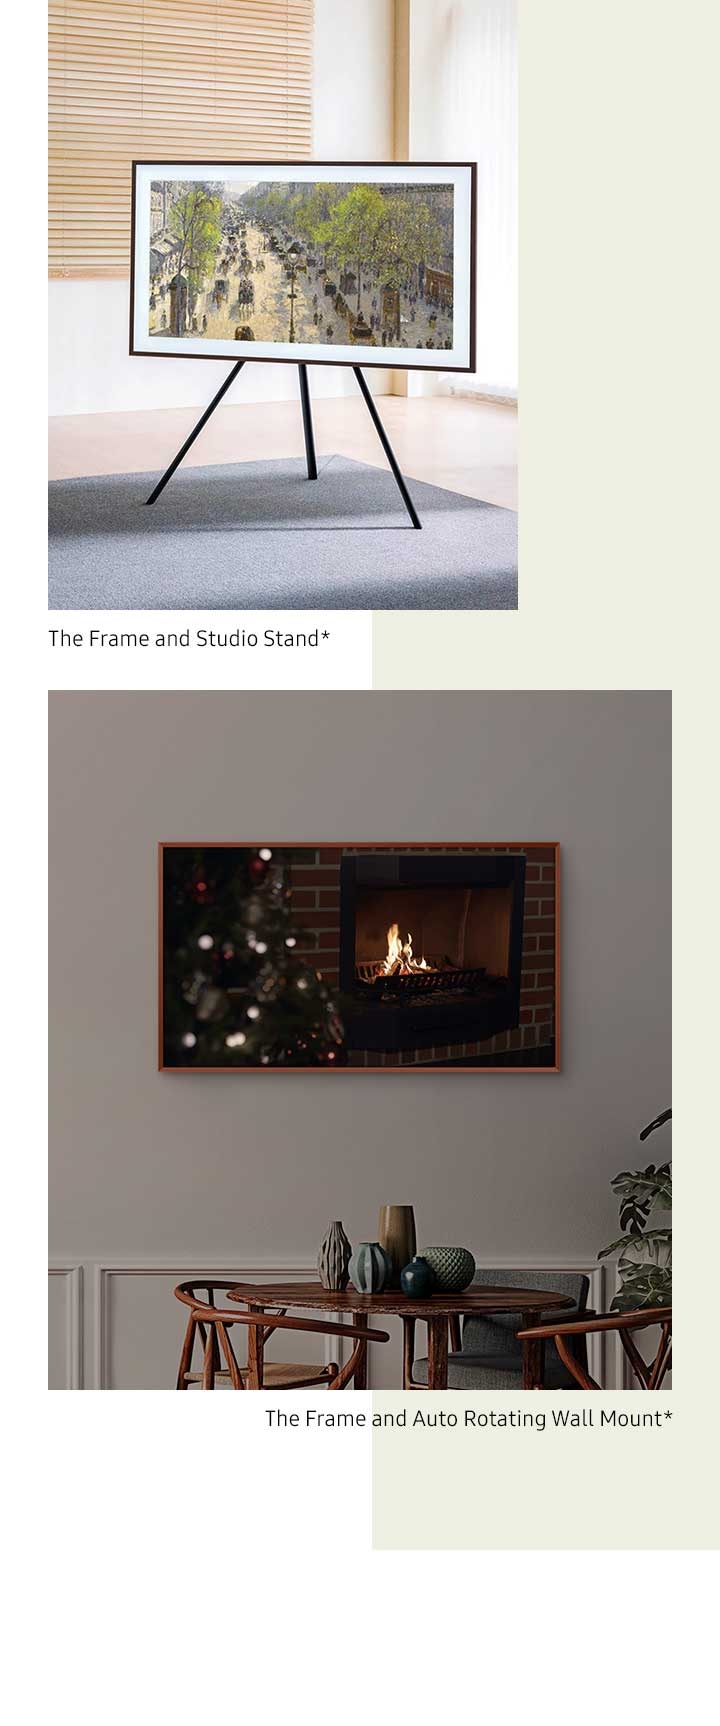 A The Frame está colocada no Suporte Rotativo Automático gira para passar do modo paisagem ao modo retrato*. A The Frame está colocada no Suporte Estúdio.